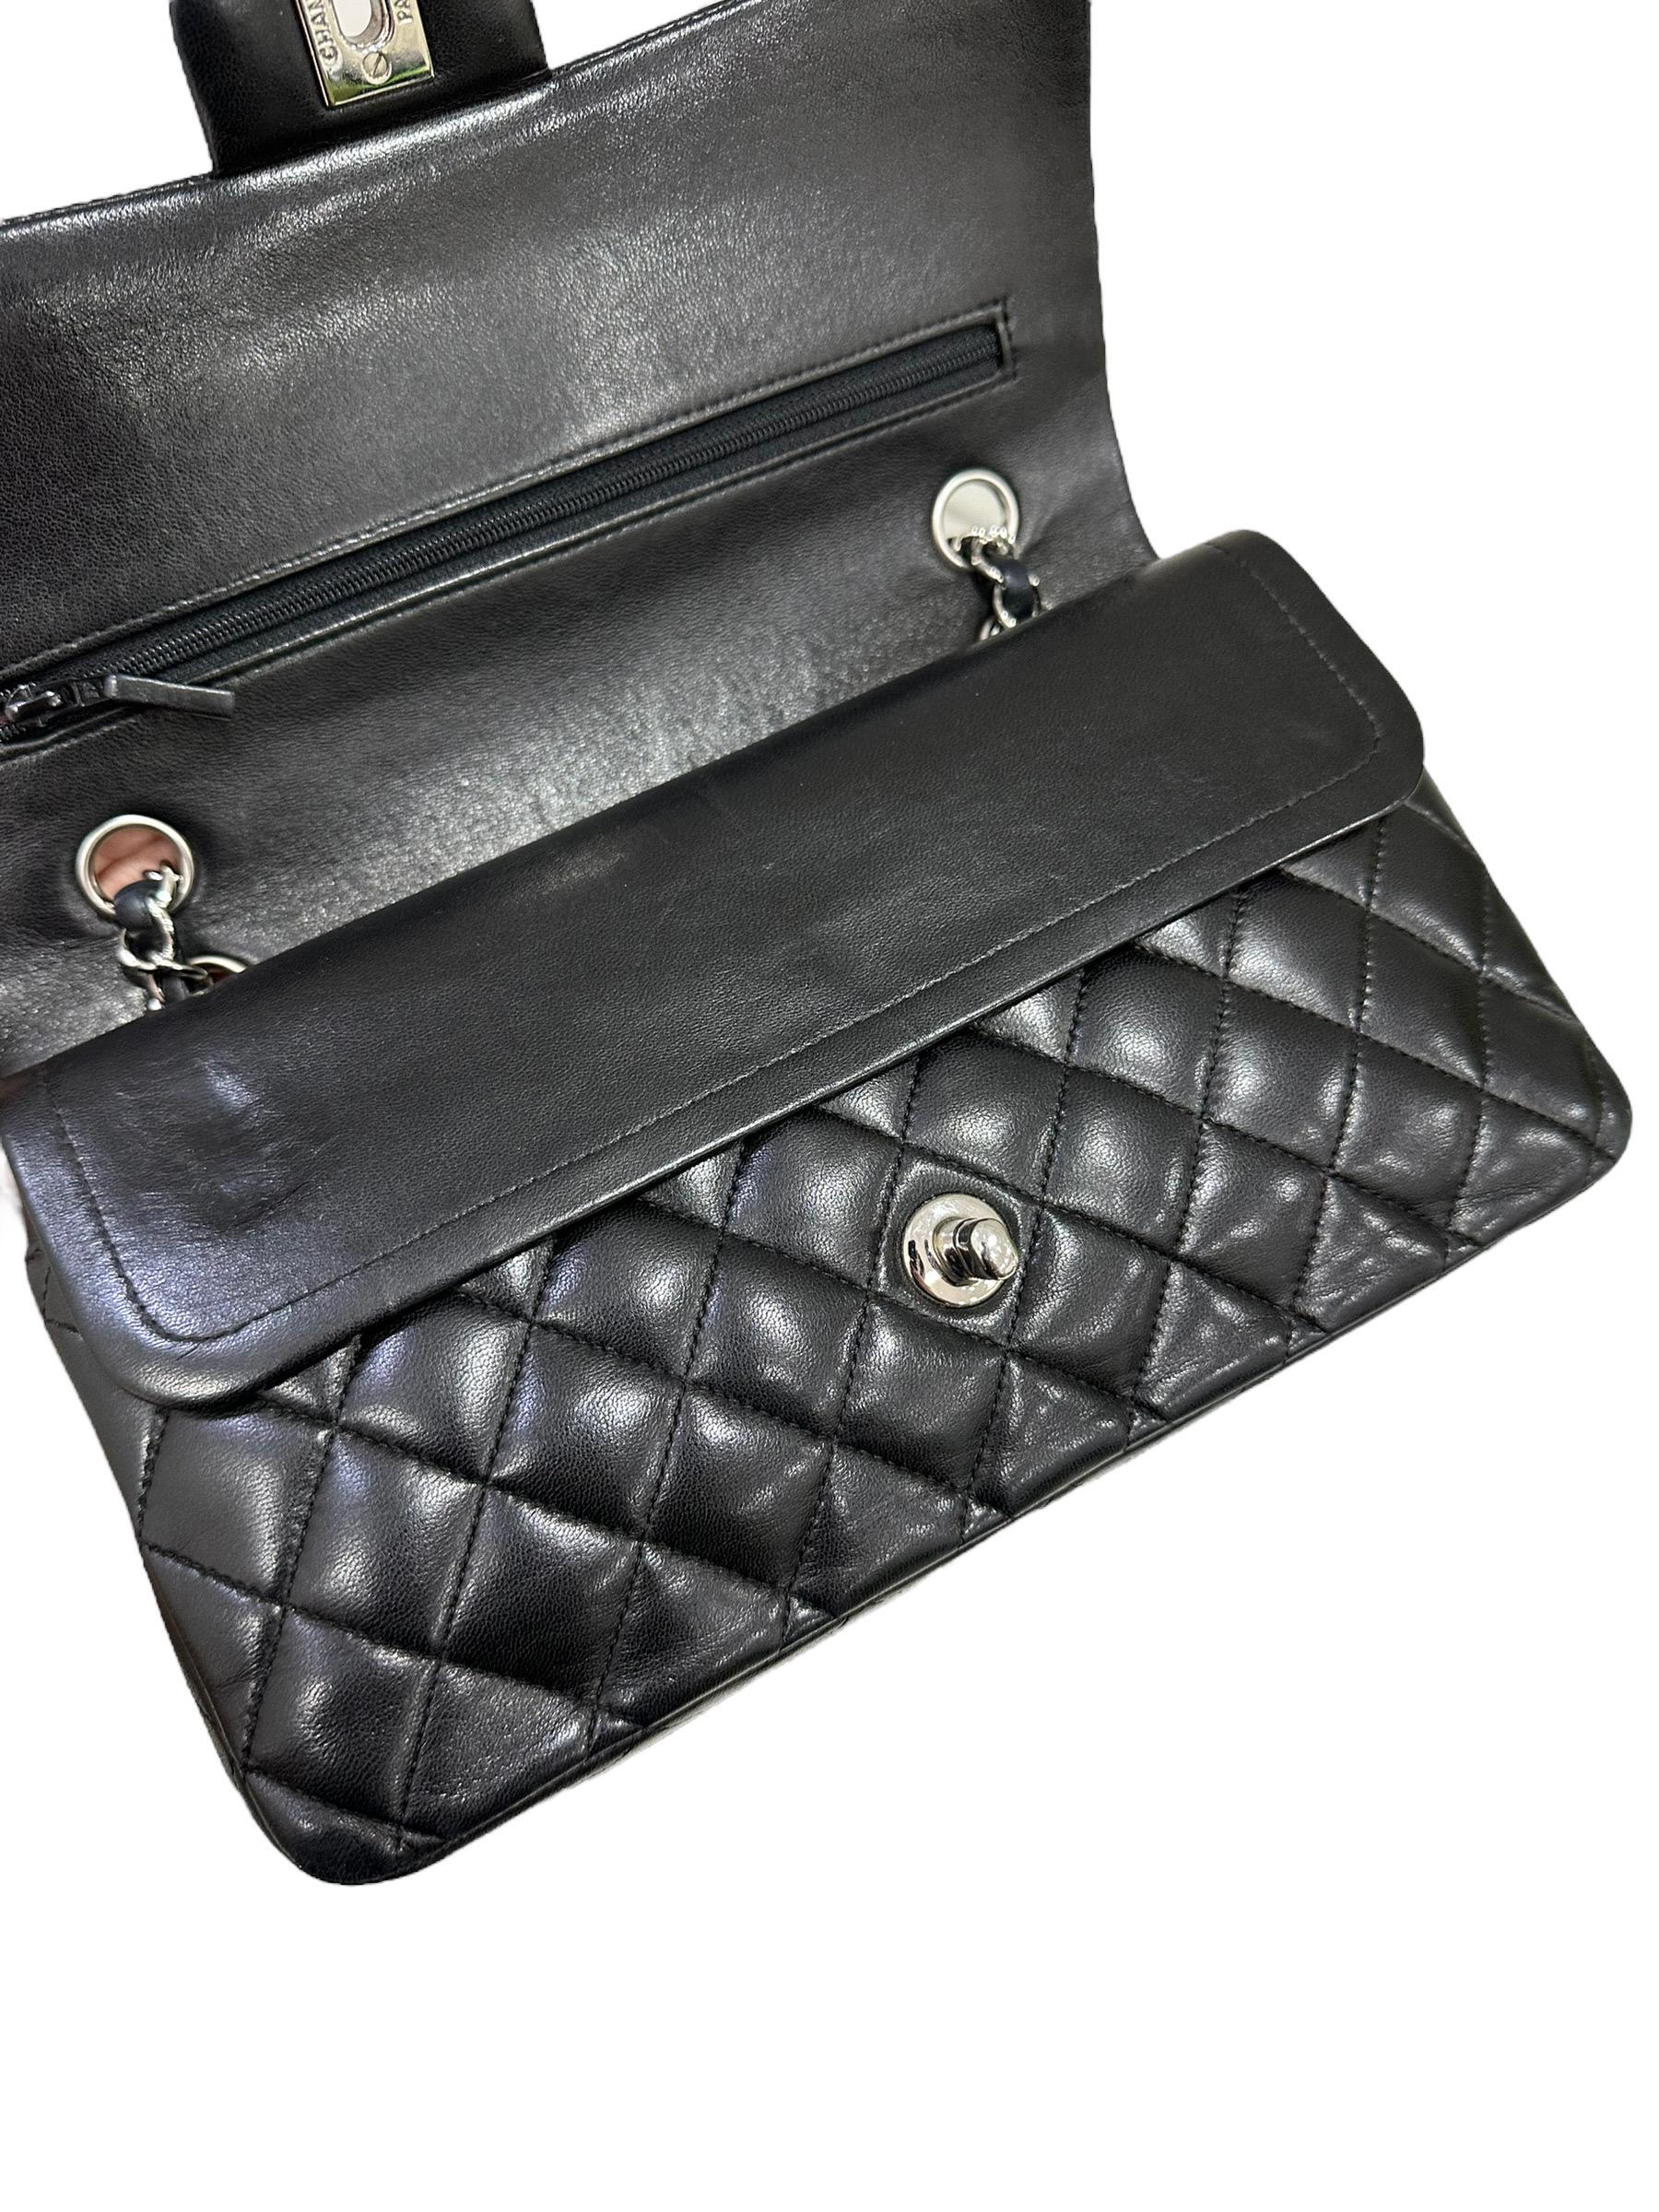 2008 Chanel. 2.55 Timeless Black Leather Shoulder Bag 11